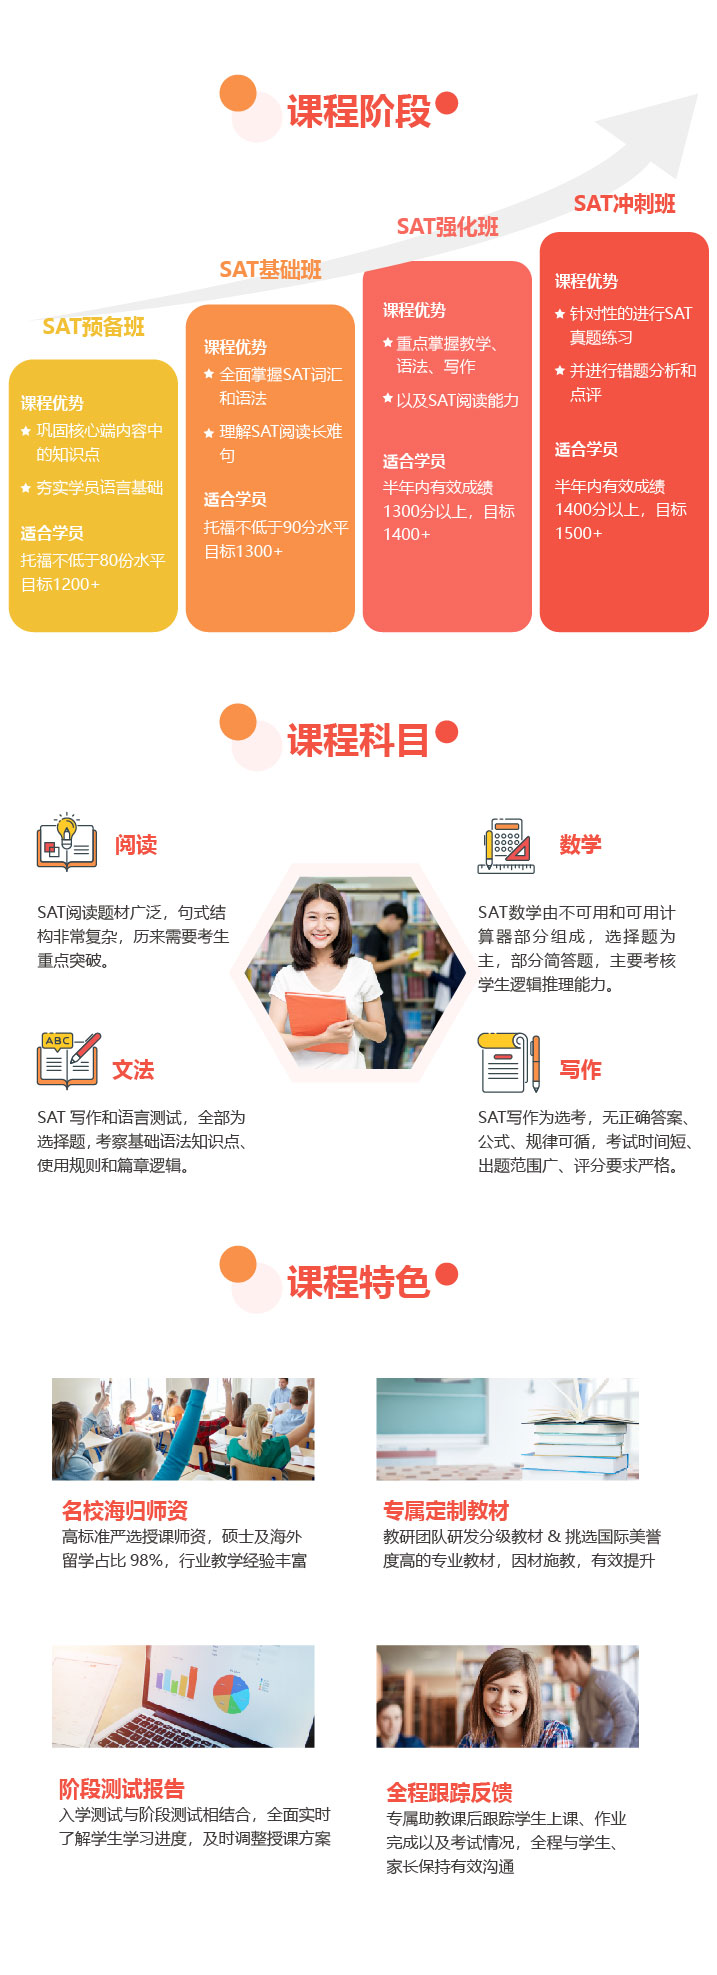 上海远播教育SAT培训课程